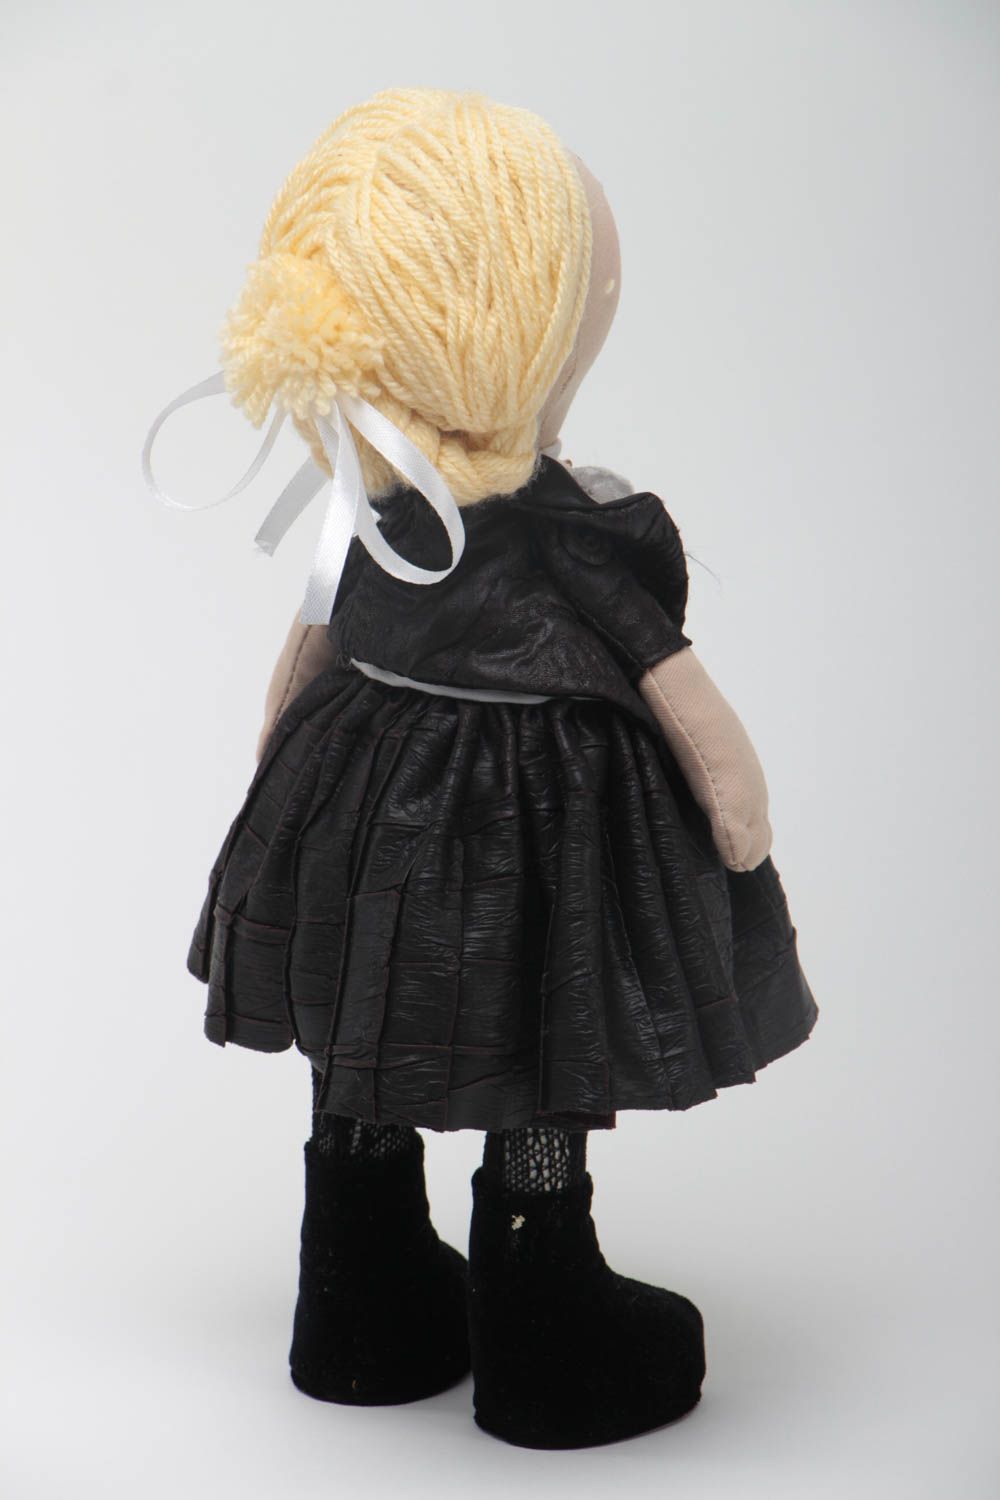 Авторская кукла из ткани с белыми волосами красивая небольшая ручной работы фото 4